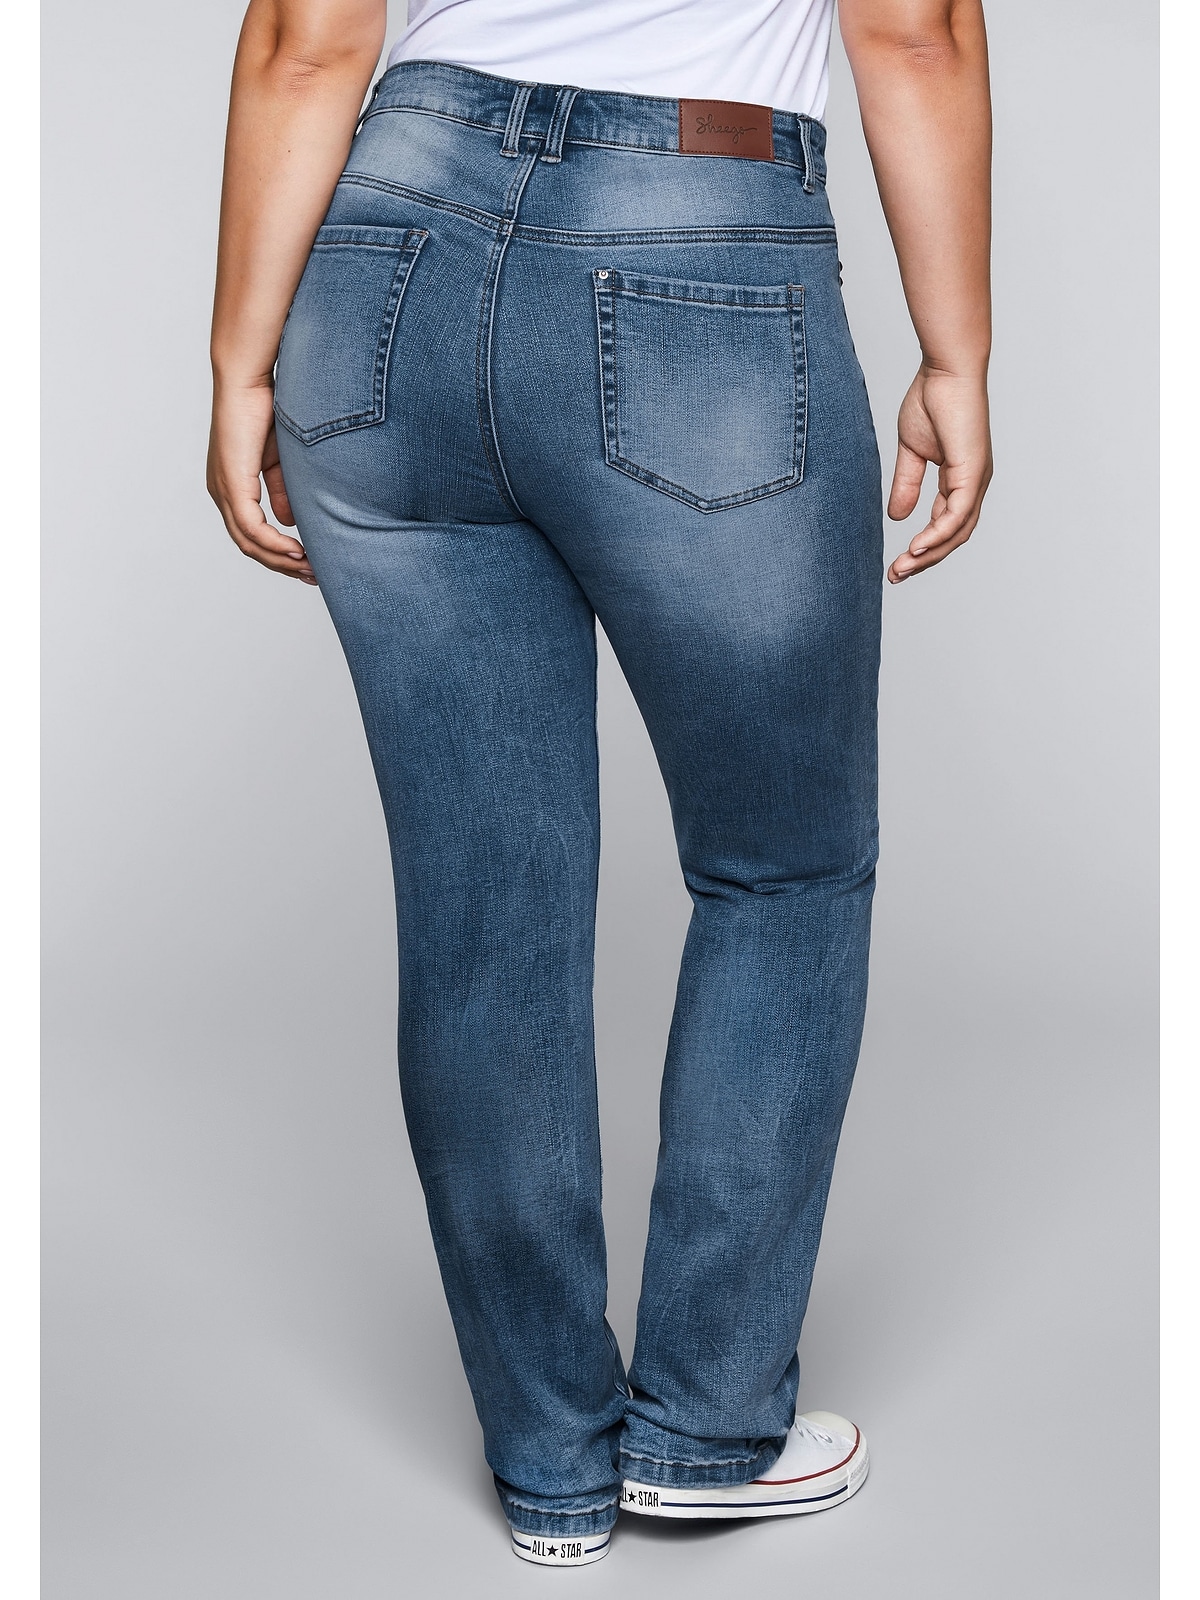 bestellen Jeans Bodyforming-Effekt Sheego mit Größen«, »Große Gerade